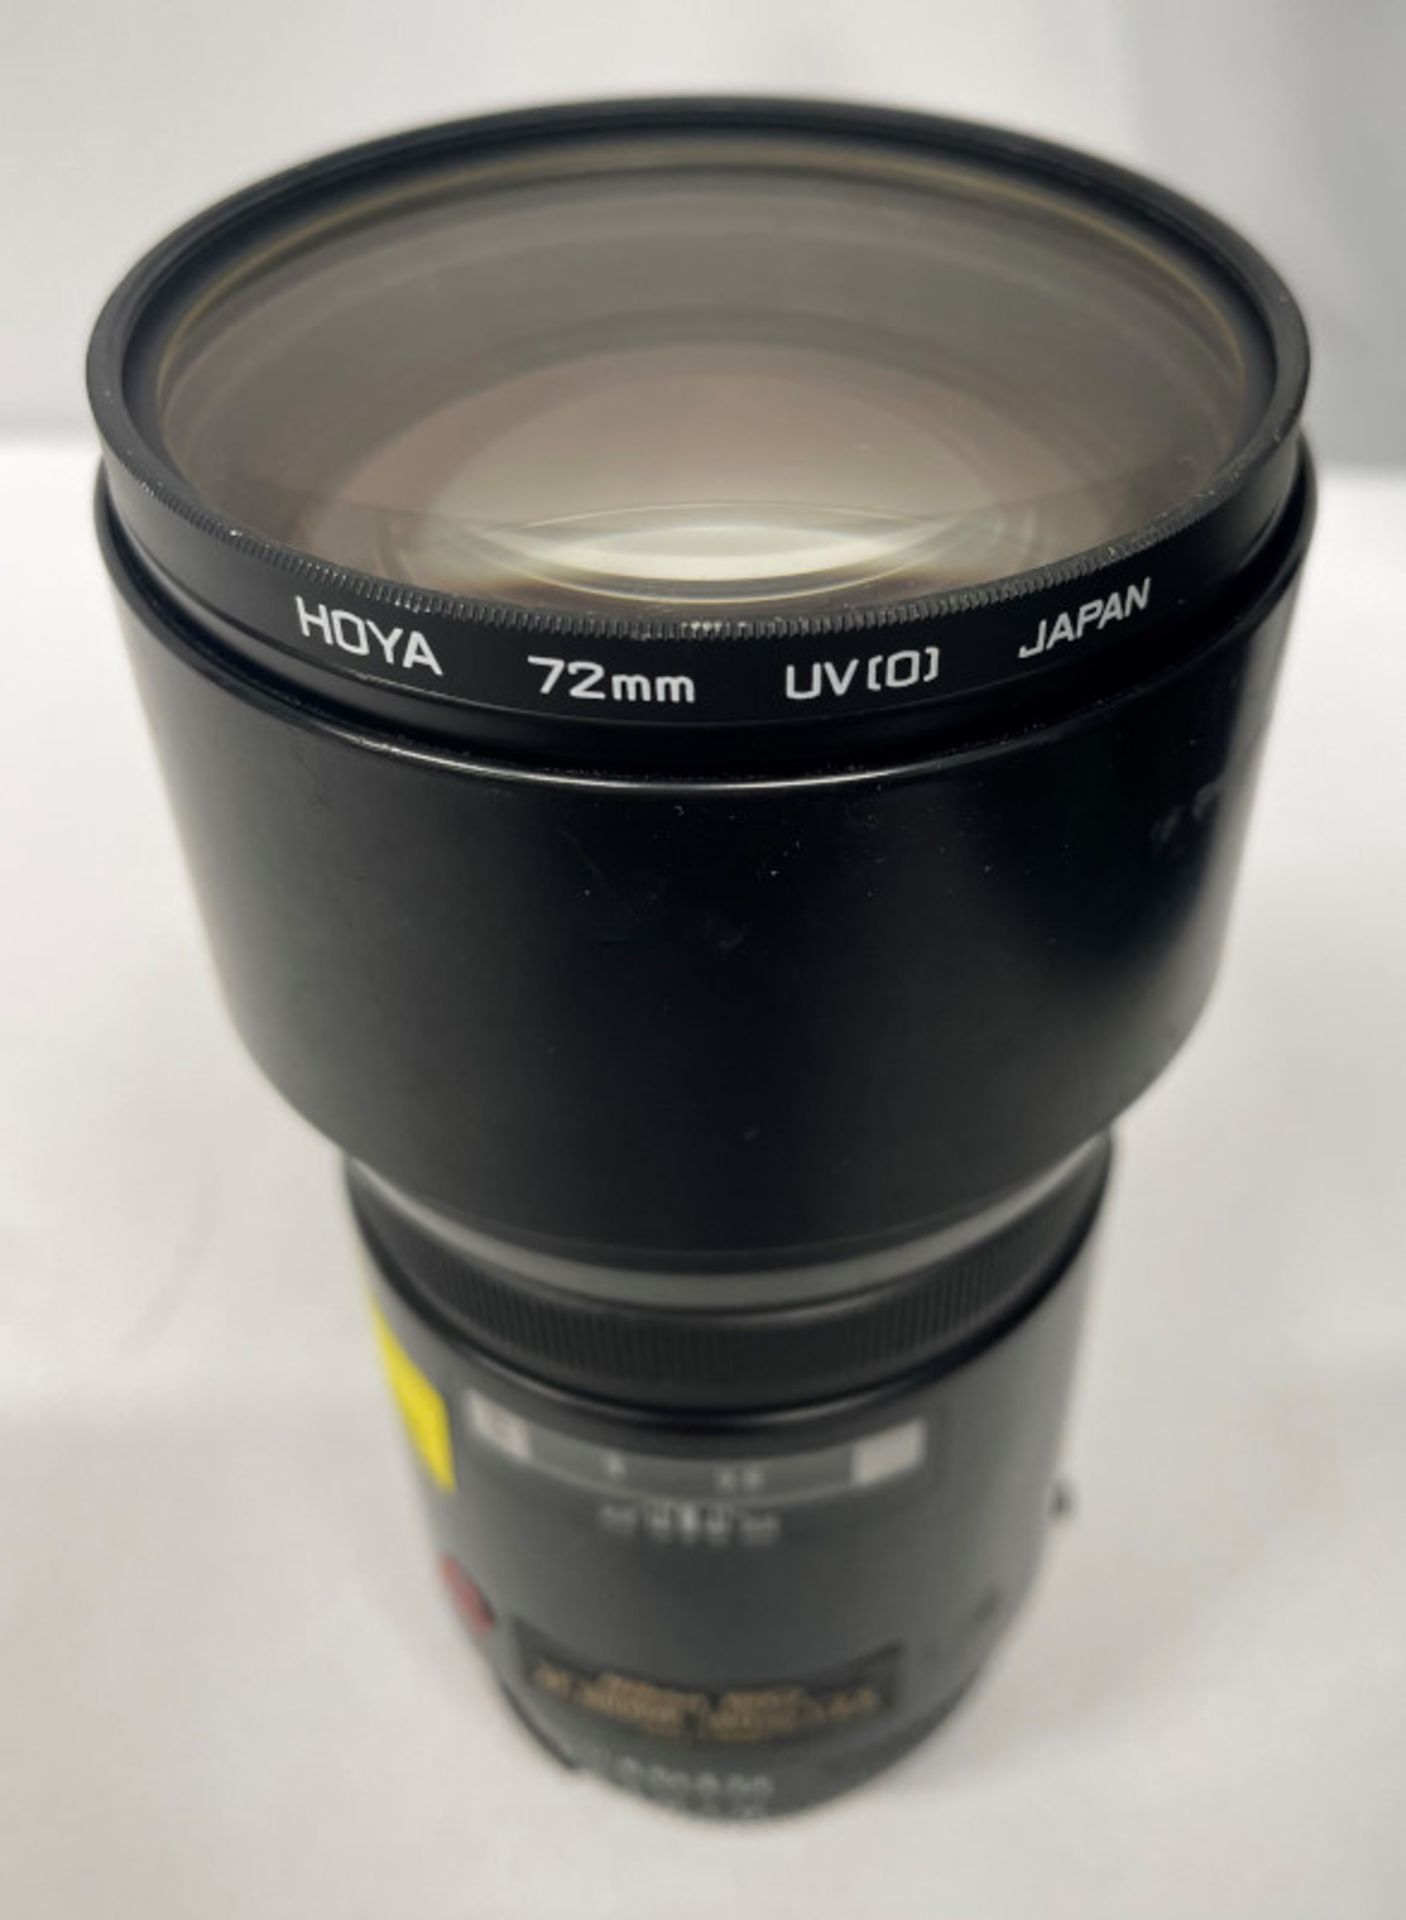 Nikon ED AF Nikkor 180mm - 1:2.8 Lens - Serial No. 203988 with HOYA 72mm UV(O) Filter - Image 5 of 6